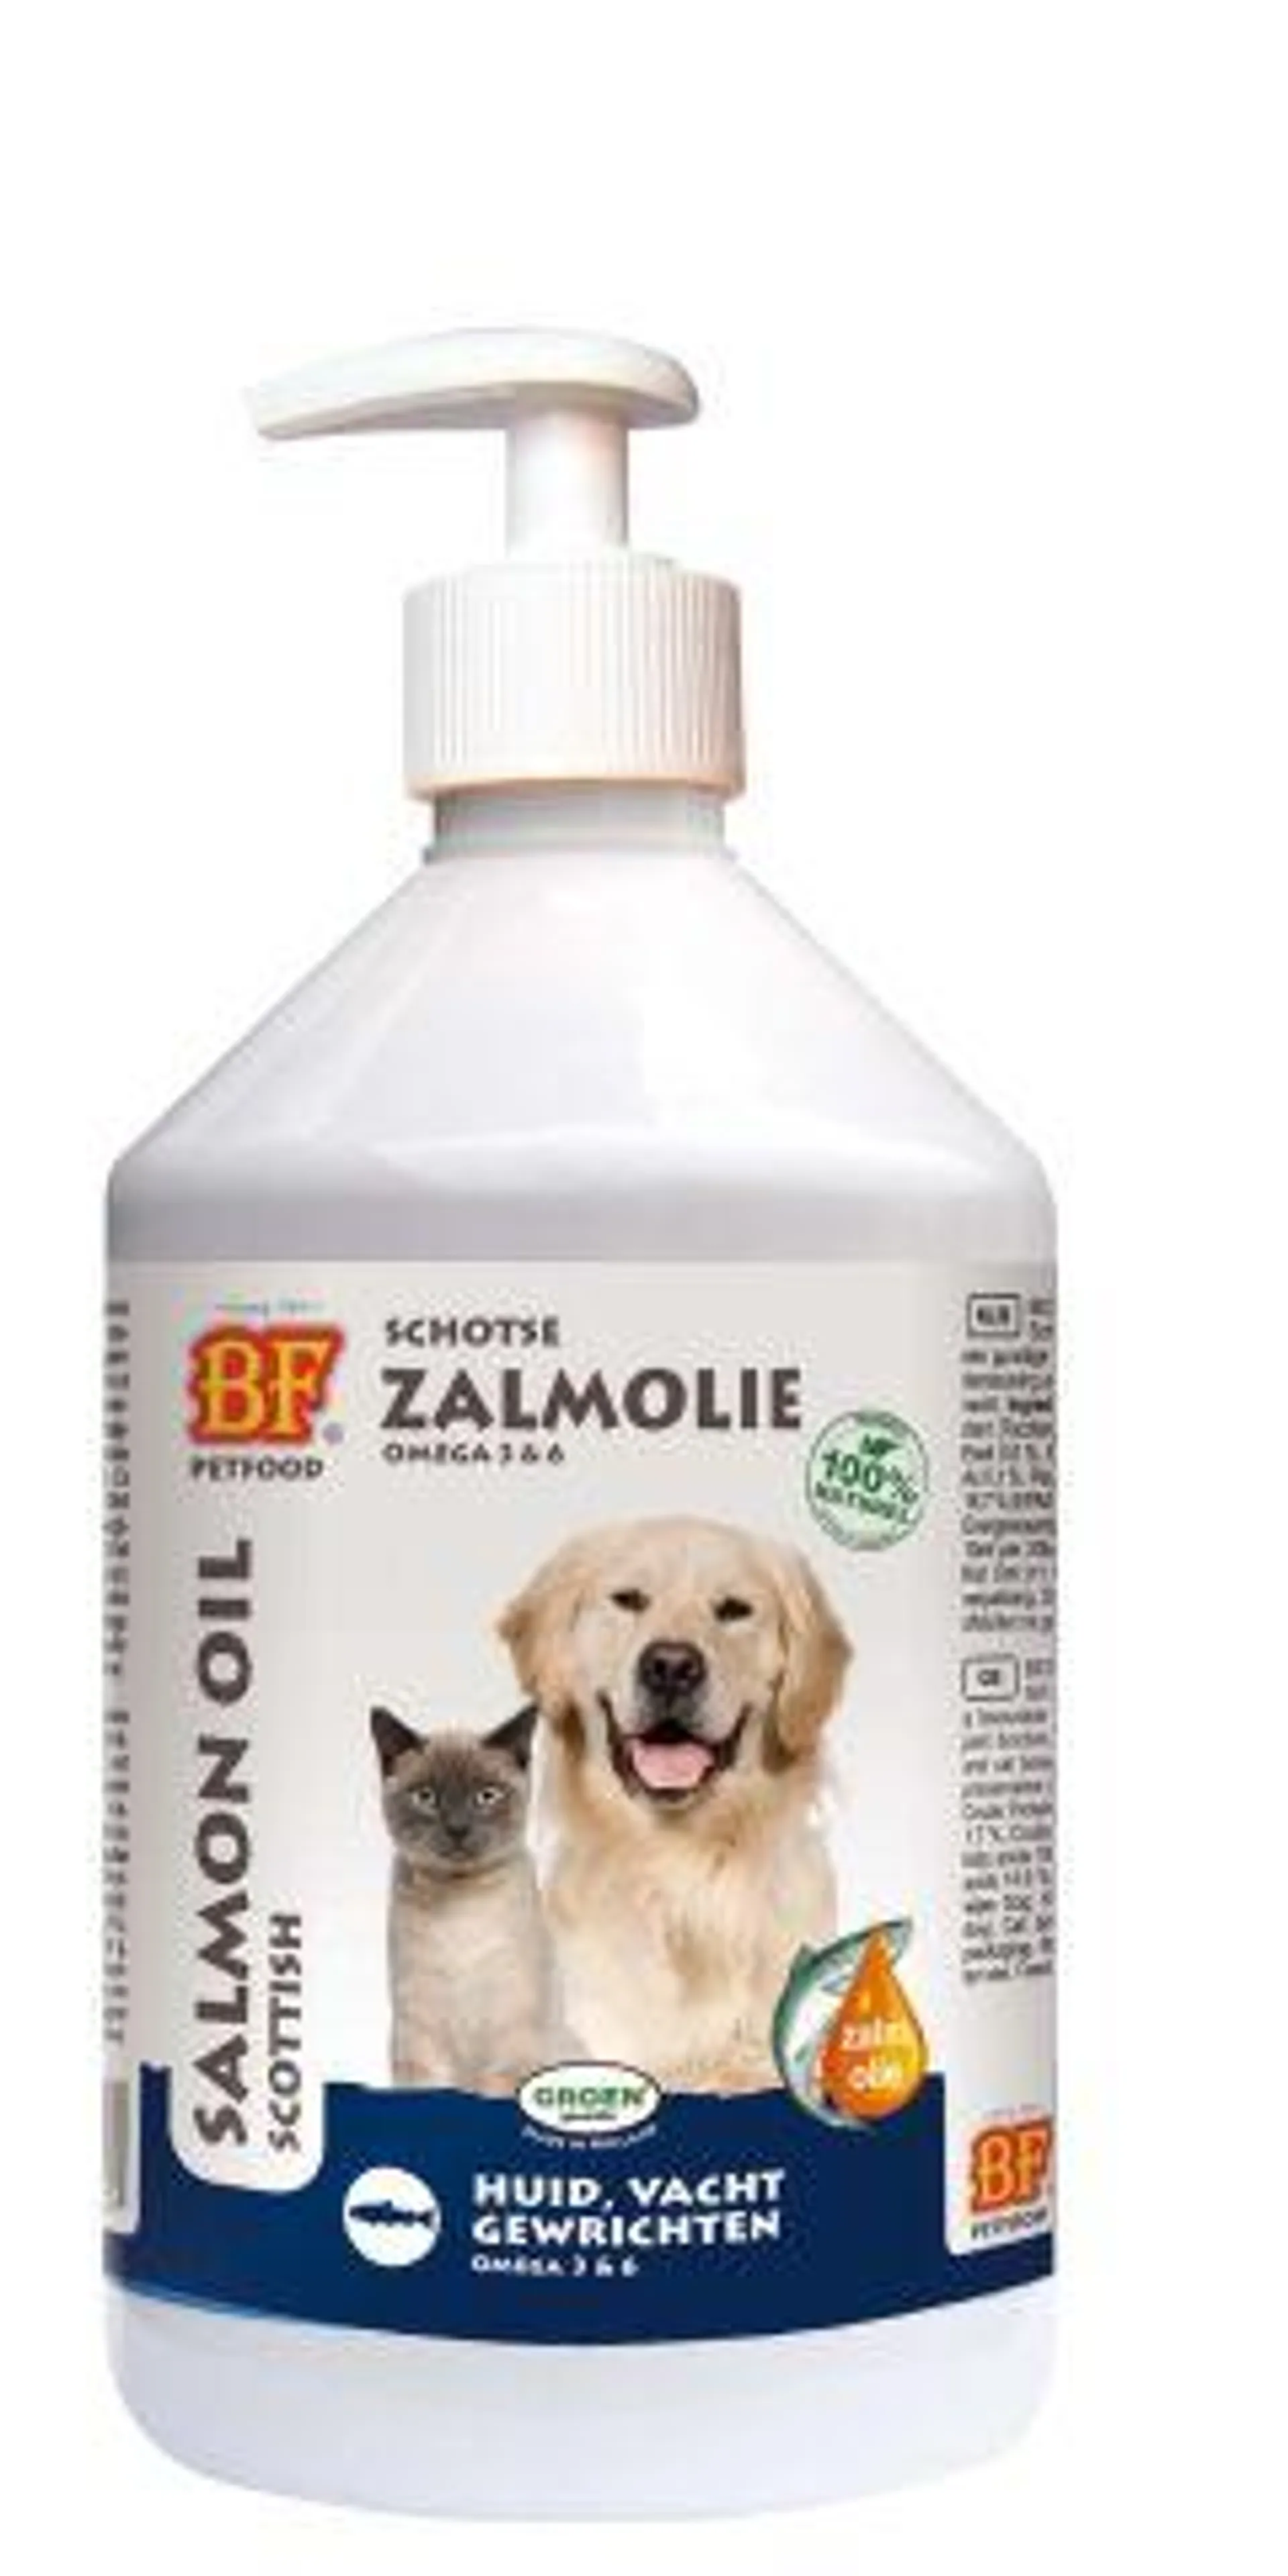 Biofood Zalmolie - Huid, Vacht, Gewrichten - Hond en Kat - 500 ml